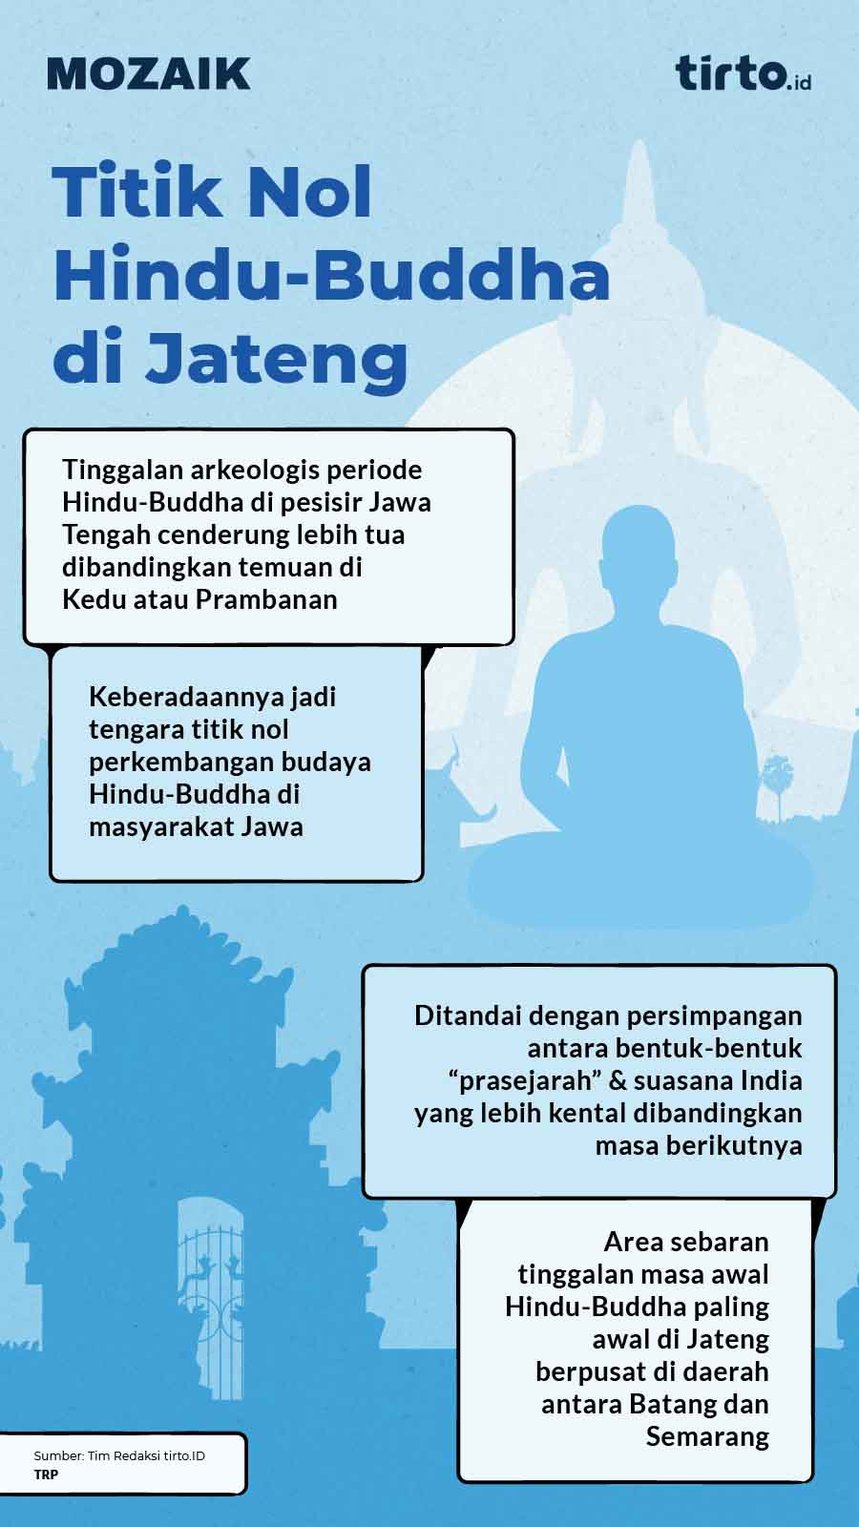 Infografik Mozaik Titik Nol Hindu-Buddha di Jateng